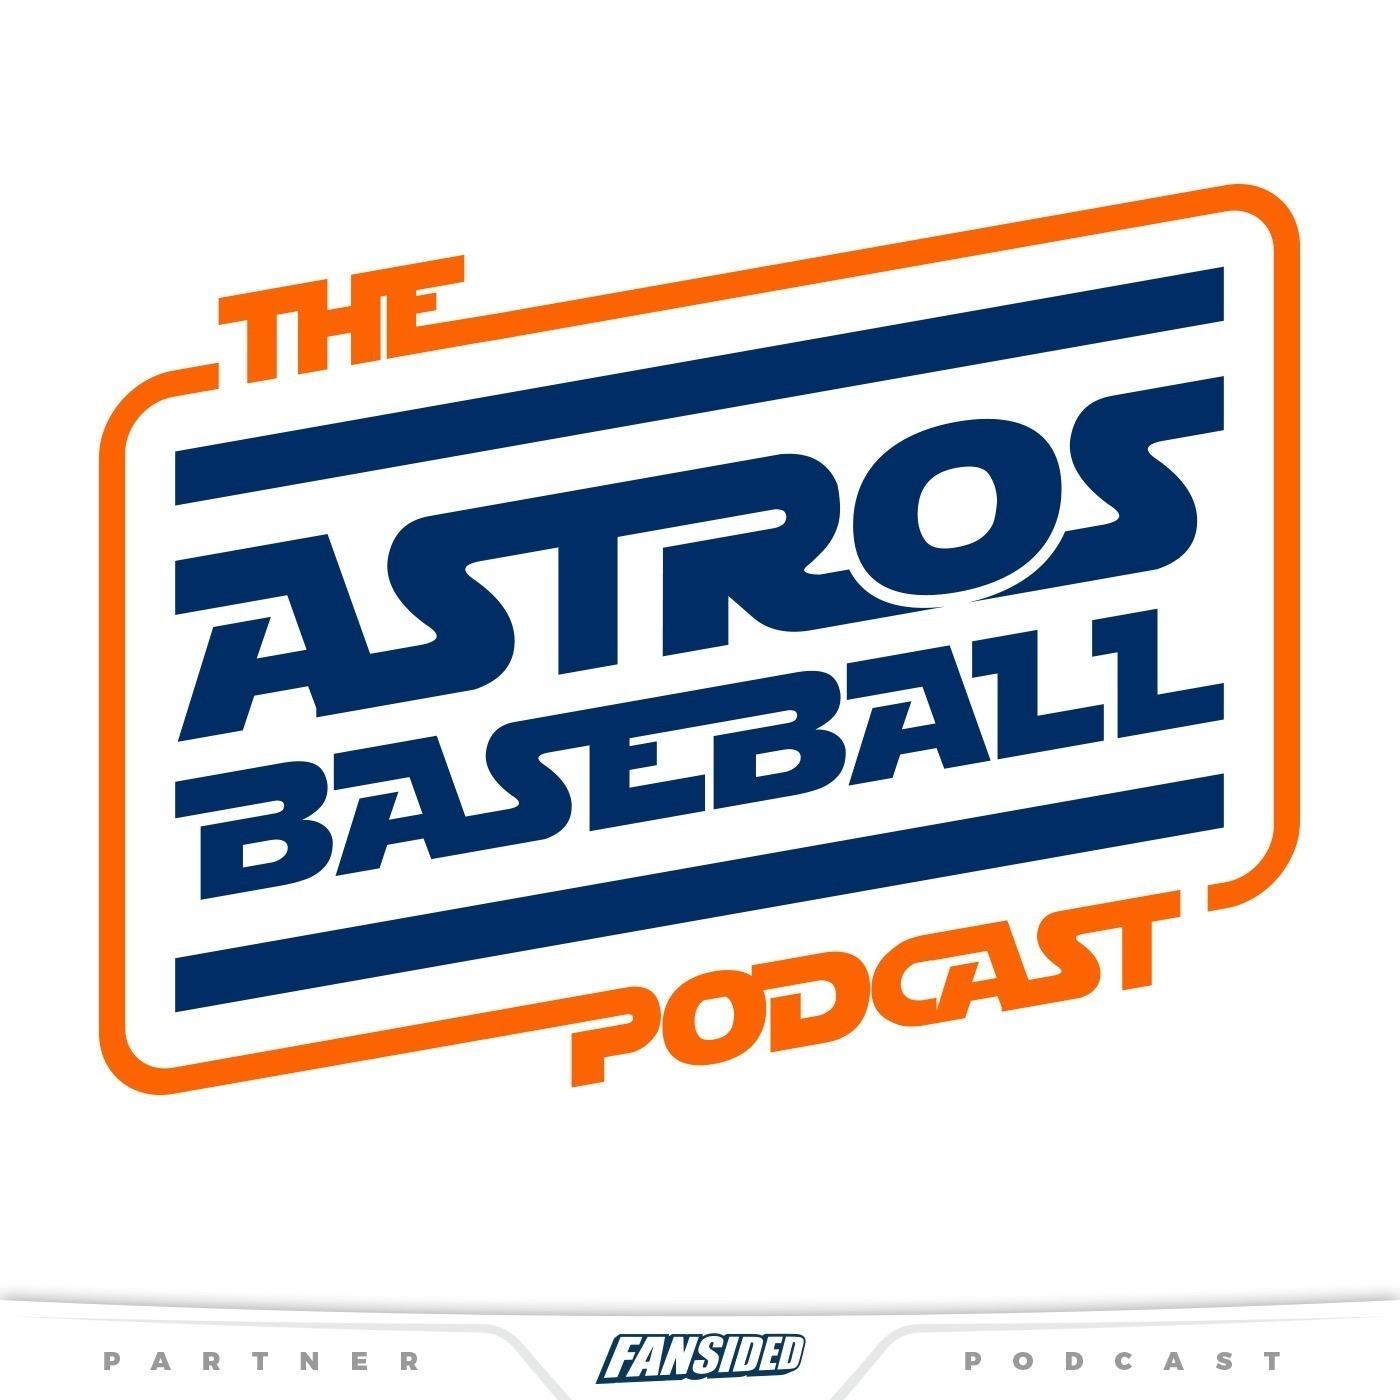 Astros Baseball - A Houston Astros Podcast 